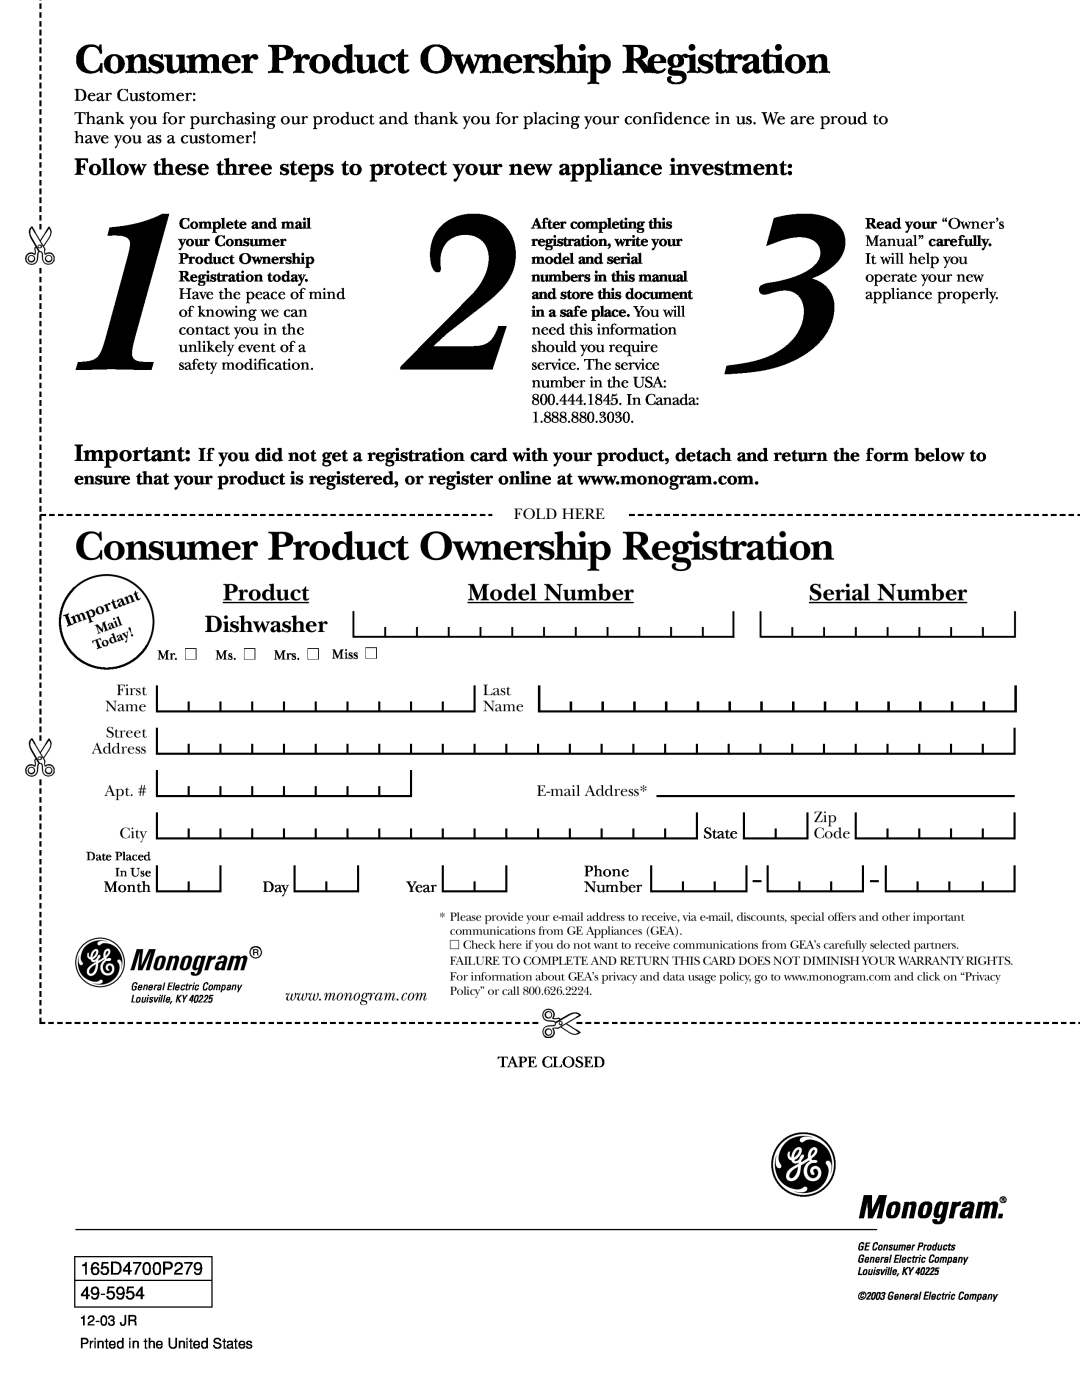 GE zbd6800k Consumer Product Ownership Registration, Monogram, Model Number, Serial Number, Dishwasher, 165D4700P279 